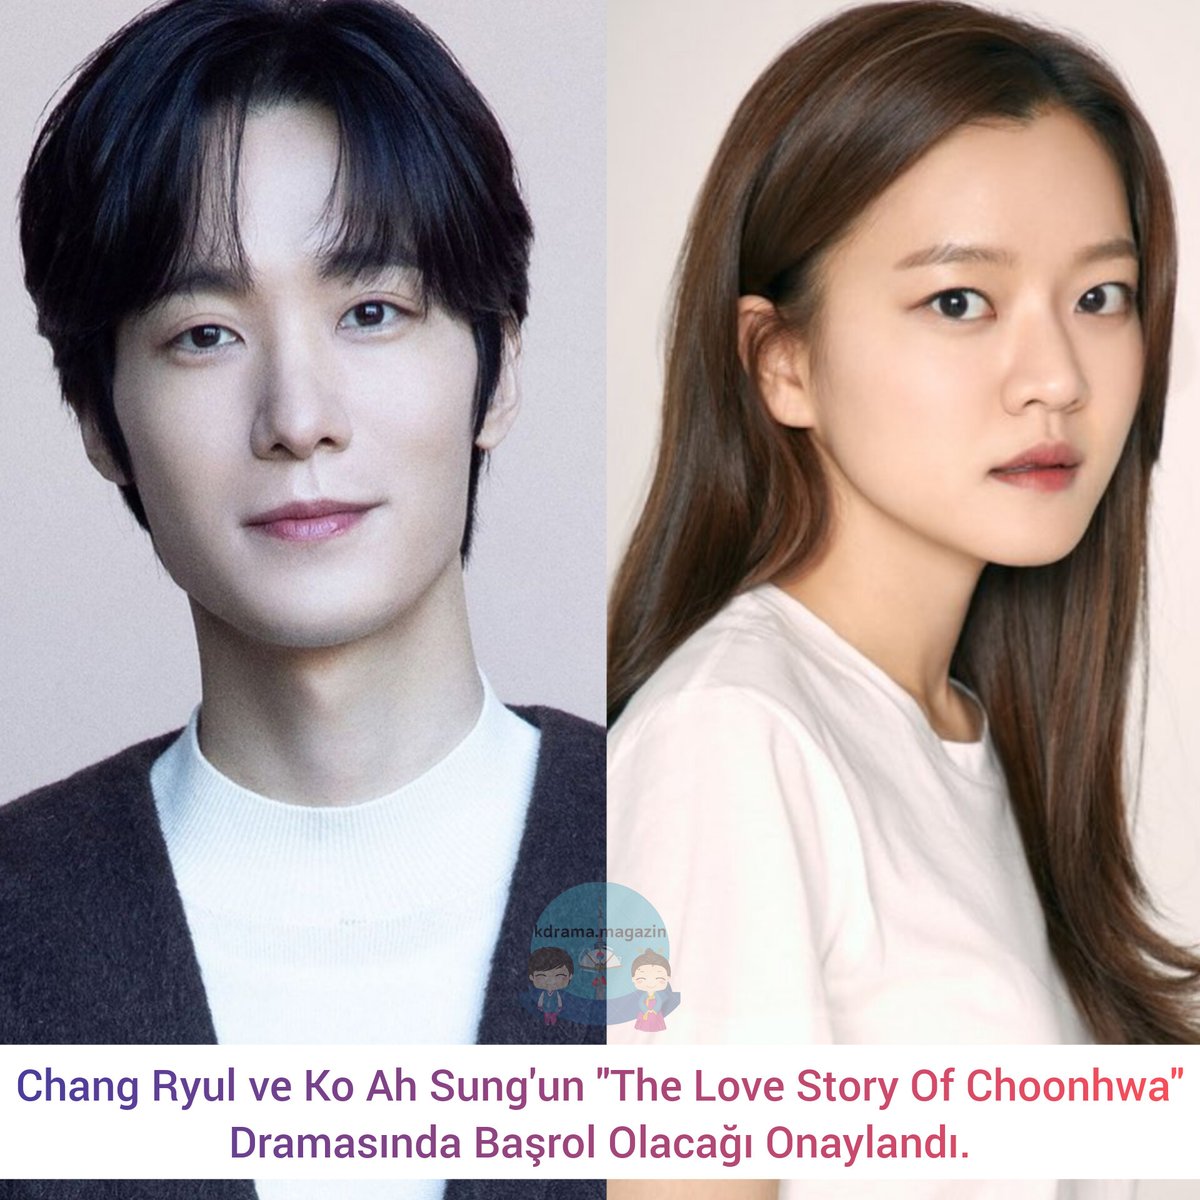 #ChangRyul ve #KoAhSung'un #TheLoveStoryOfChoonhwa Dramasında Başrol Olacağı Onaylandı.

🍿Prenses Hwari'nin saraydan ayrılıp özgür bir ilişkinin keyfini çıkarmasını ve kocasını tek başına seçmesini anlatıyor.

🗓2024'te yayınlanacak.

#GoAhSung